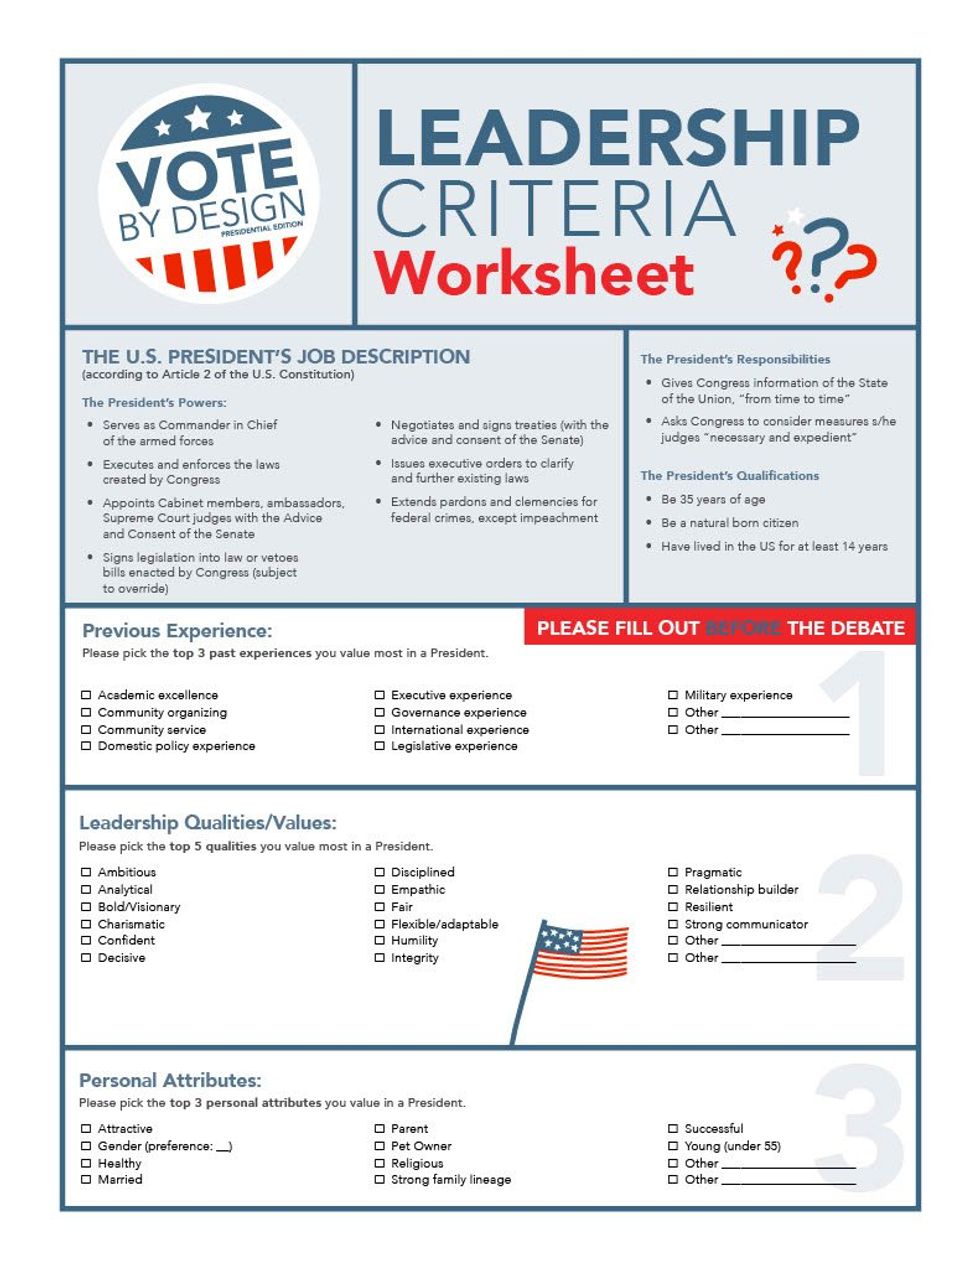 Vote by Design Leadership Criteria Worksheet